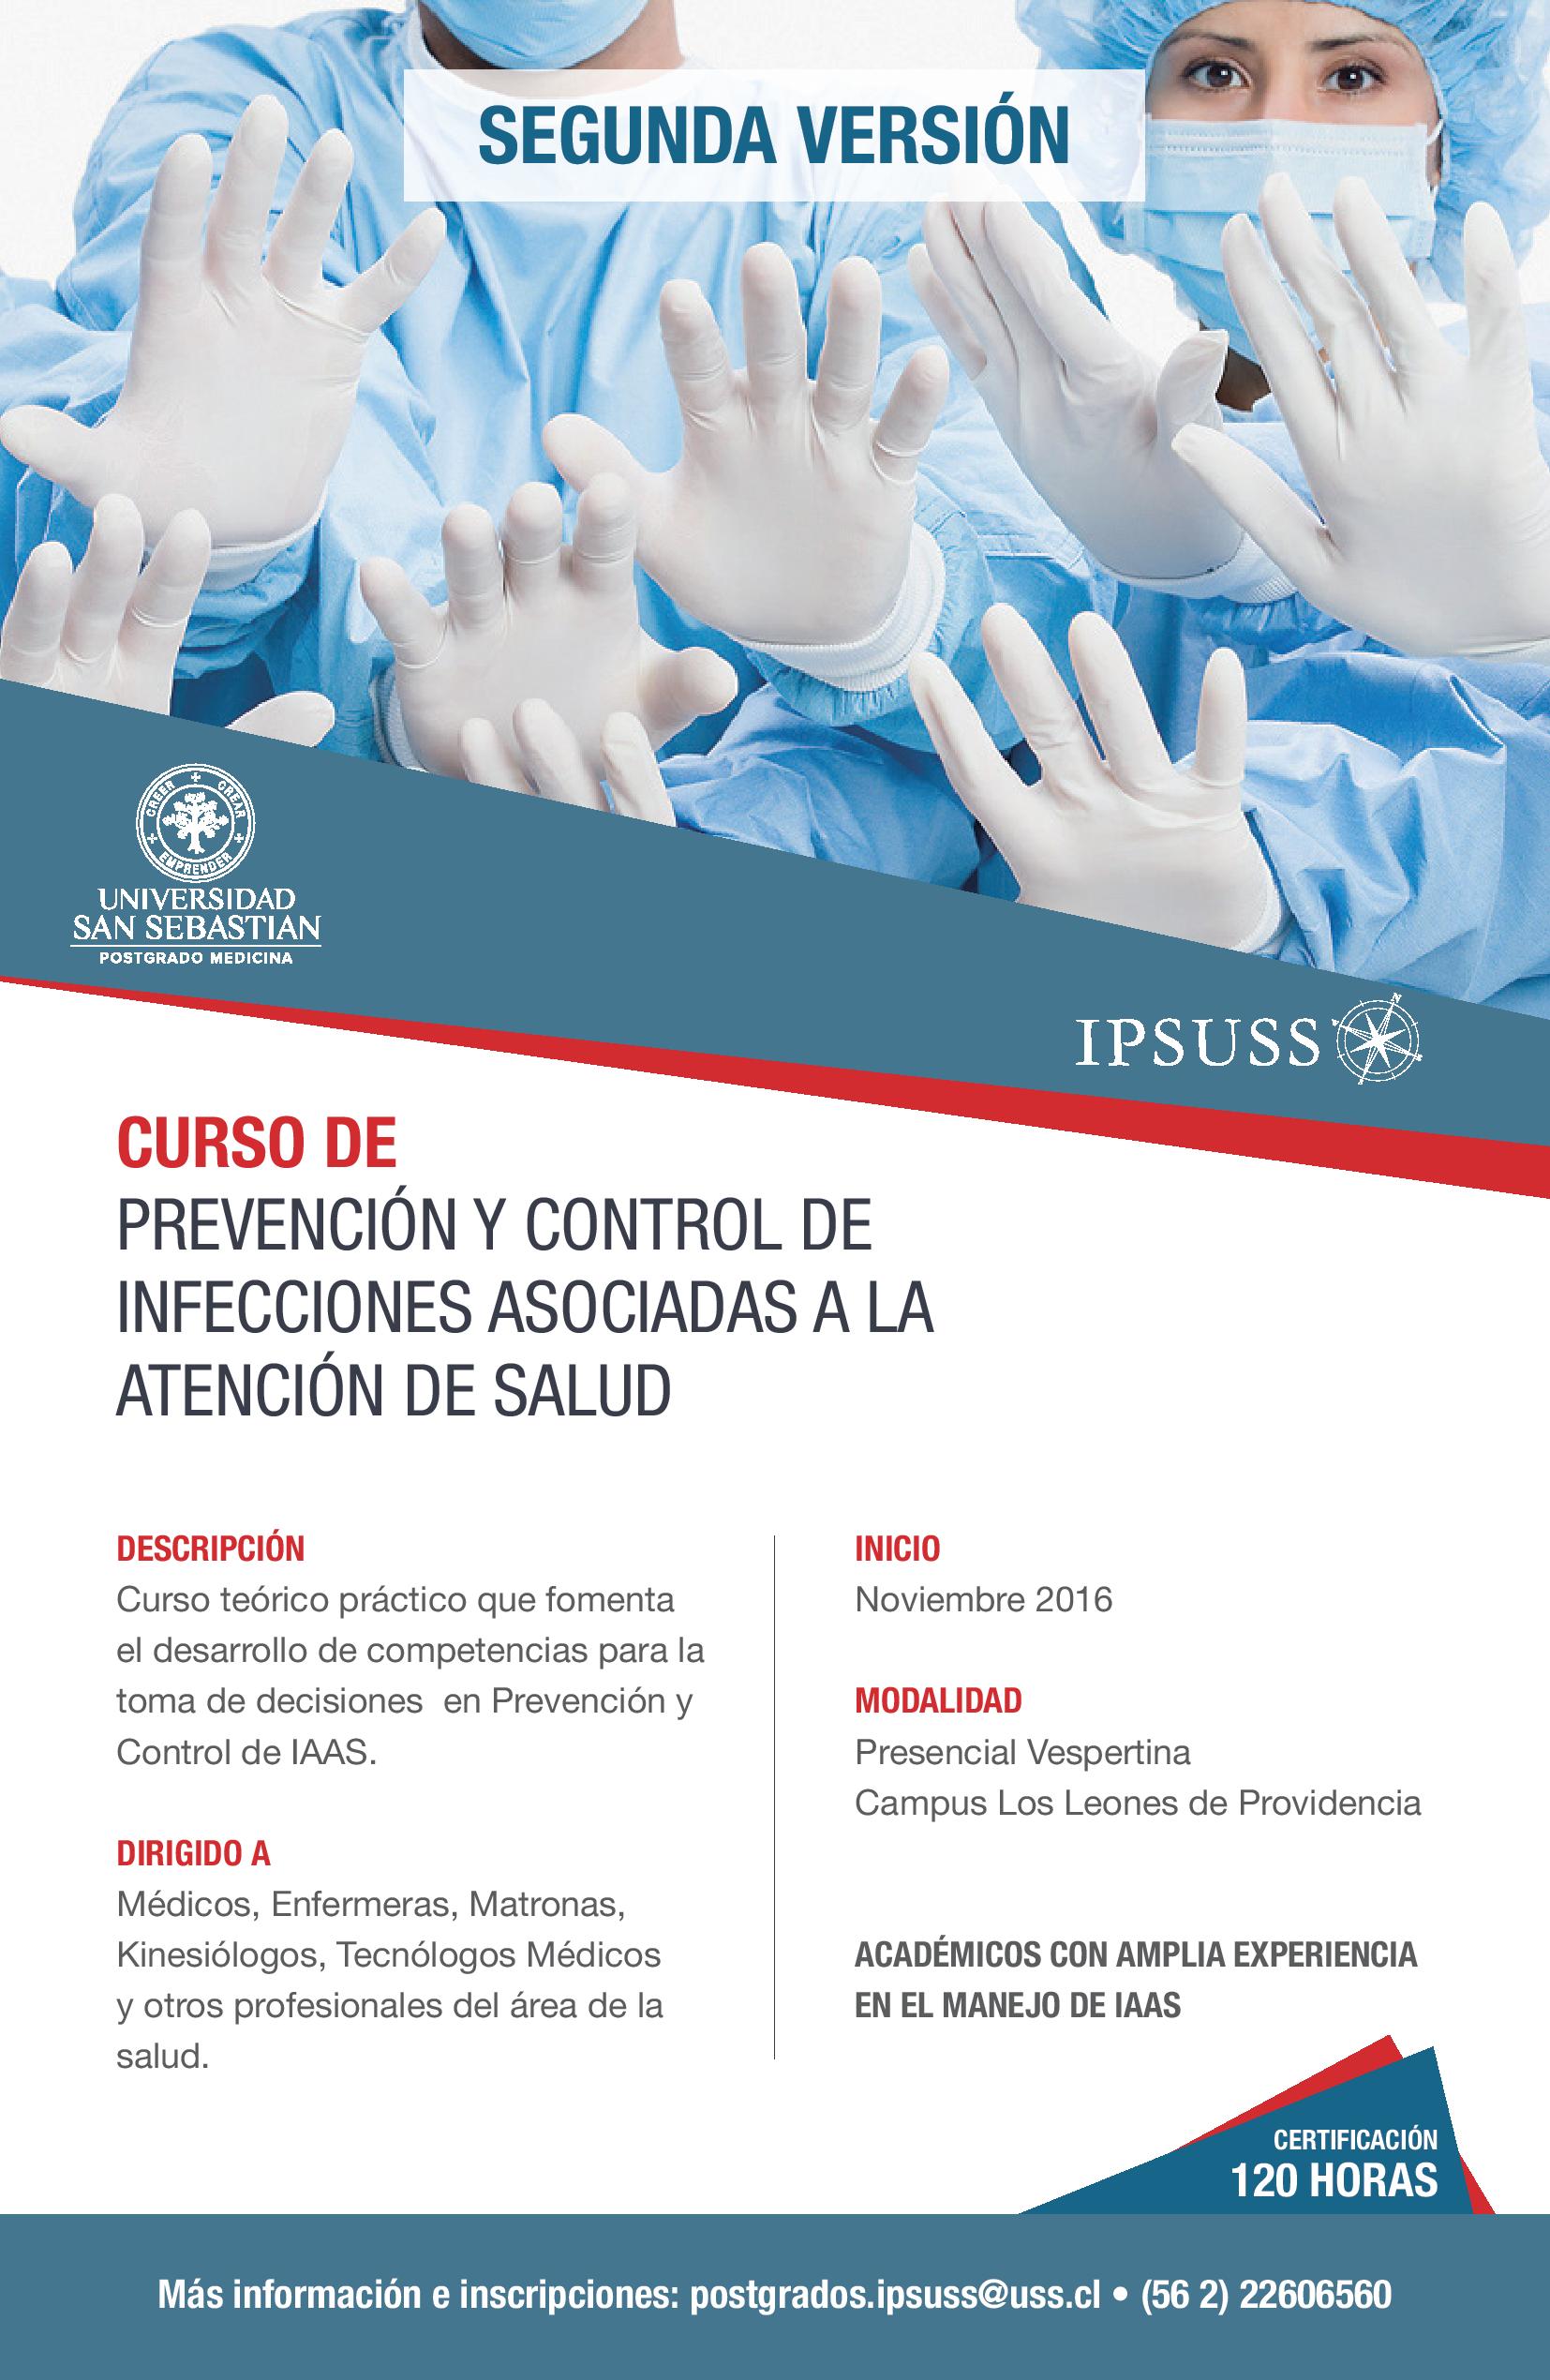 Curso De Prevención Y Control De Infecciones Asociadas A La Atención De Salud Ipsuss 2897